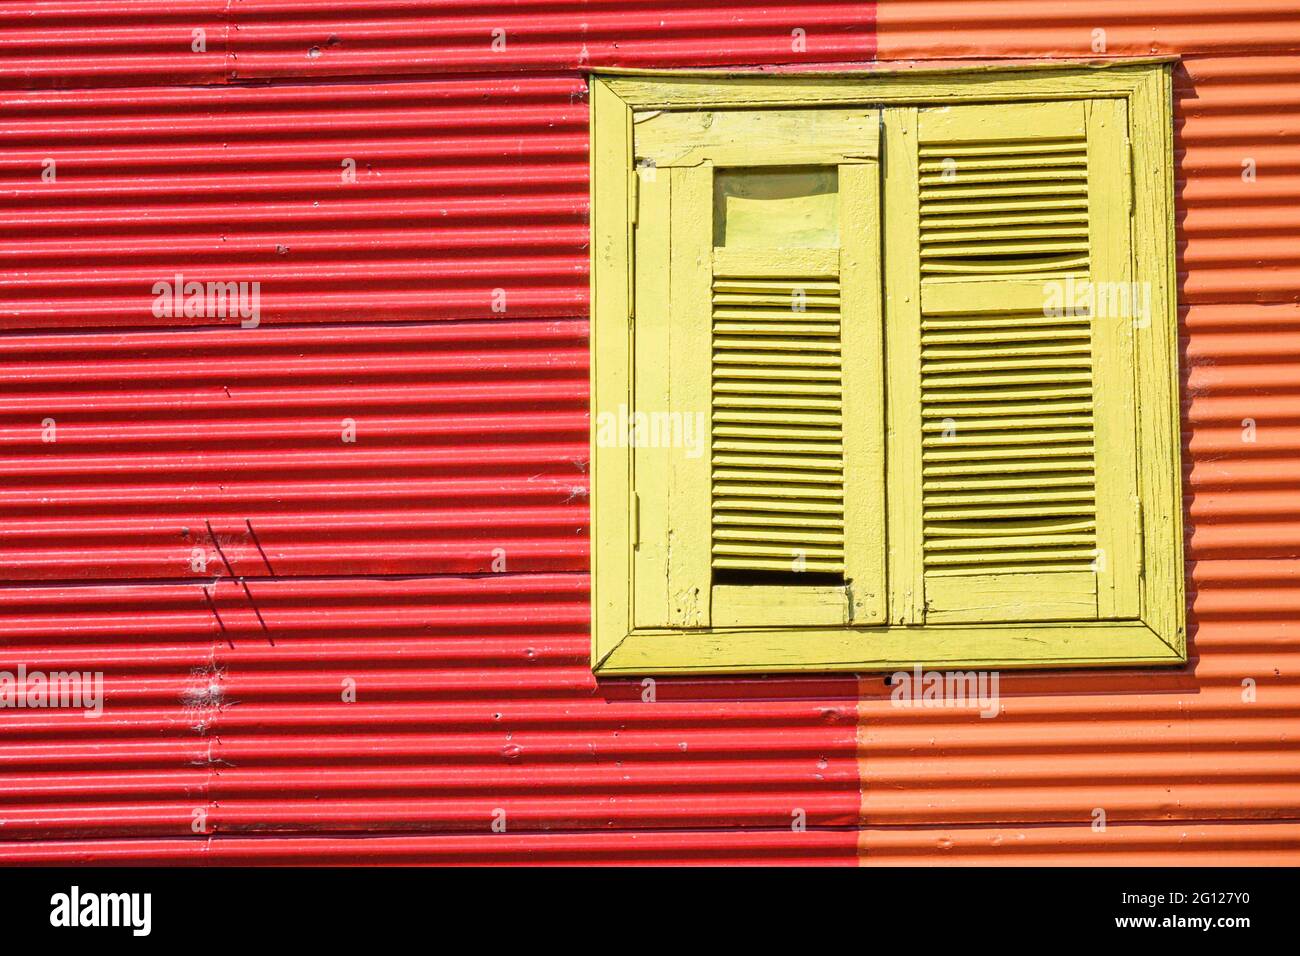 Argentina Buenos Aires Caminito Barrio de la Boca icónico barrio histórico cultural edificios pintados Conventillo vivienda urbana persianas ventana br Foto de stock